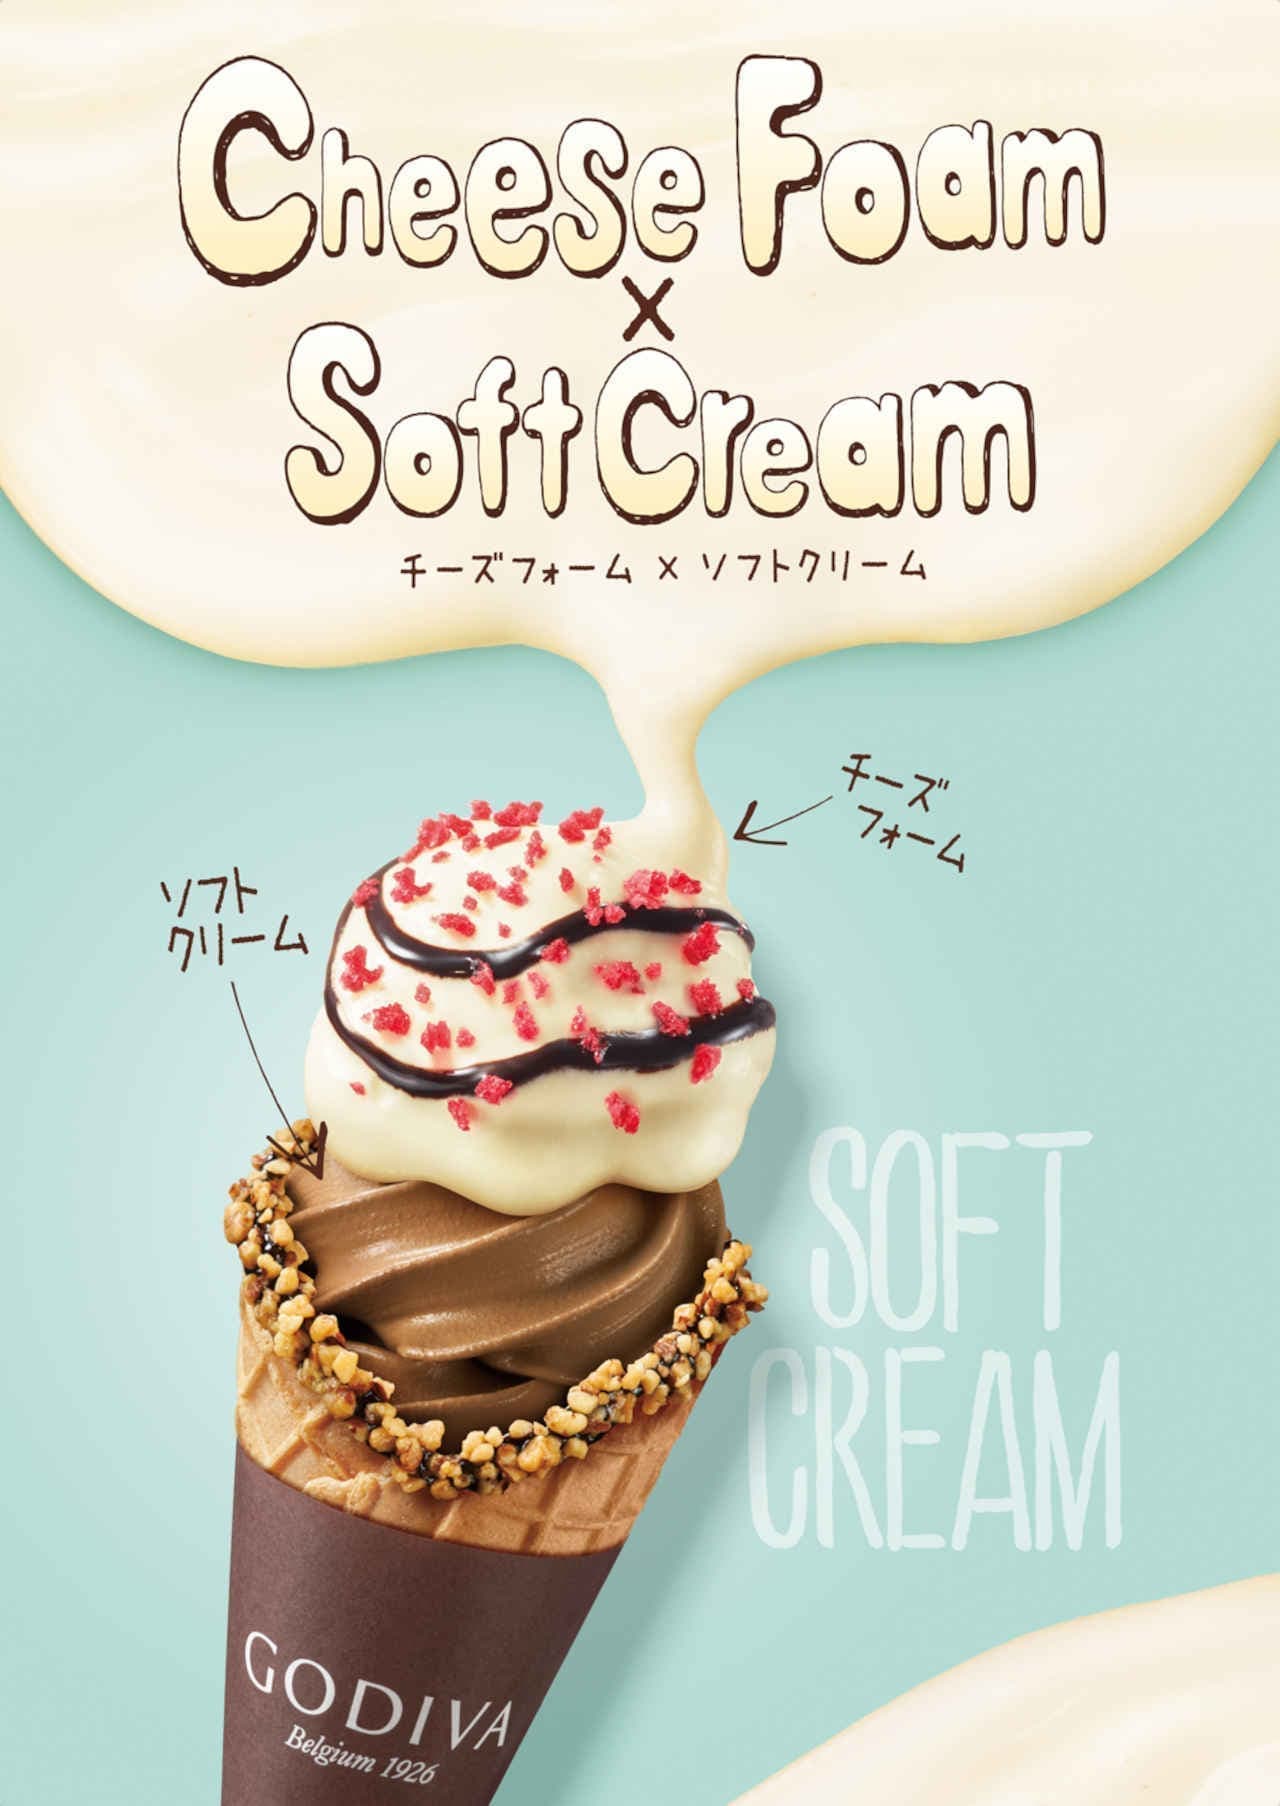 Godiva "Cheese Foam x Soft Ice Cream"